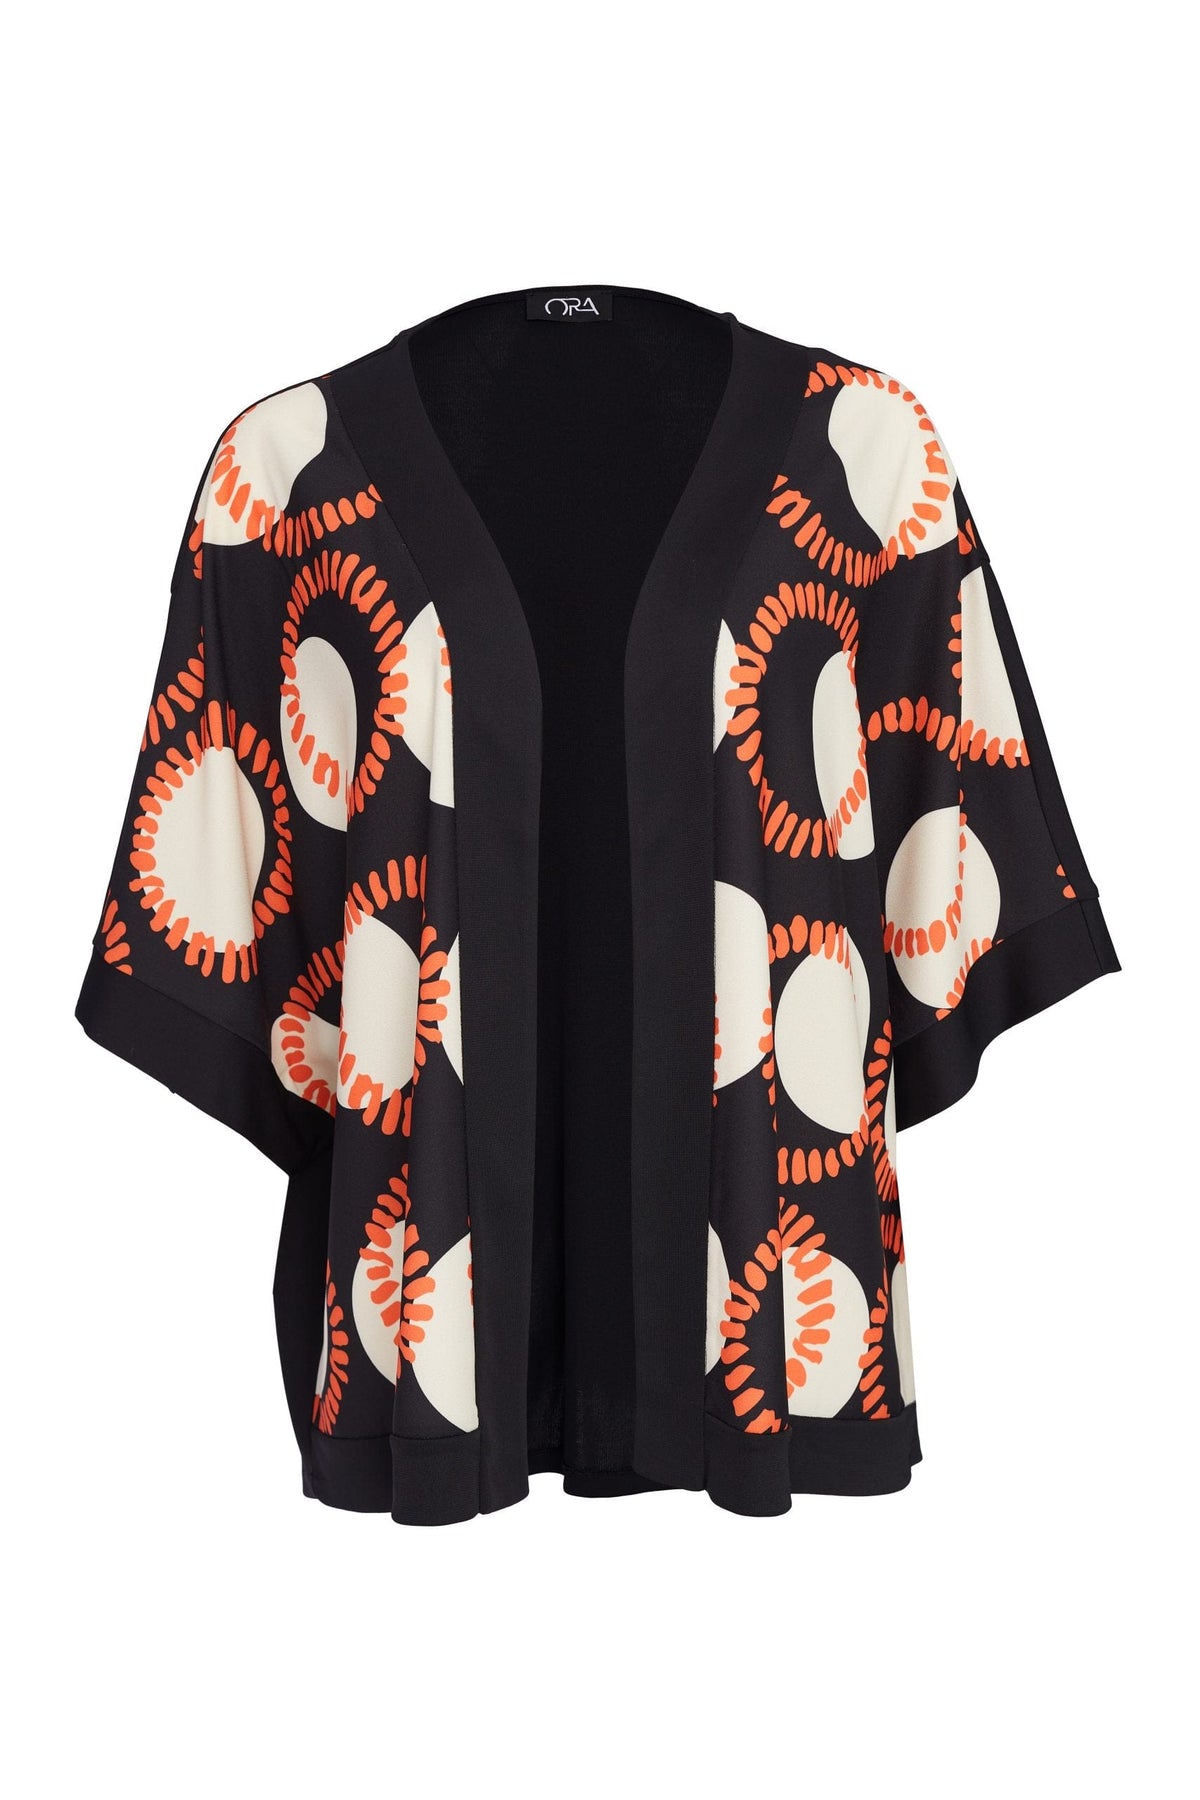 ORA Retro Print Kimono Jacket